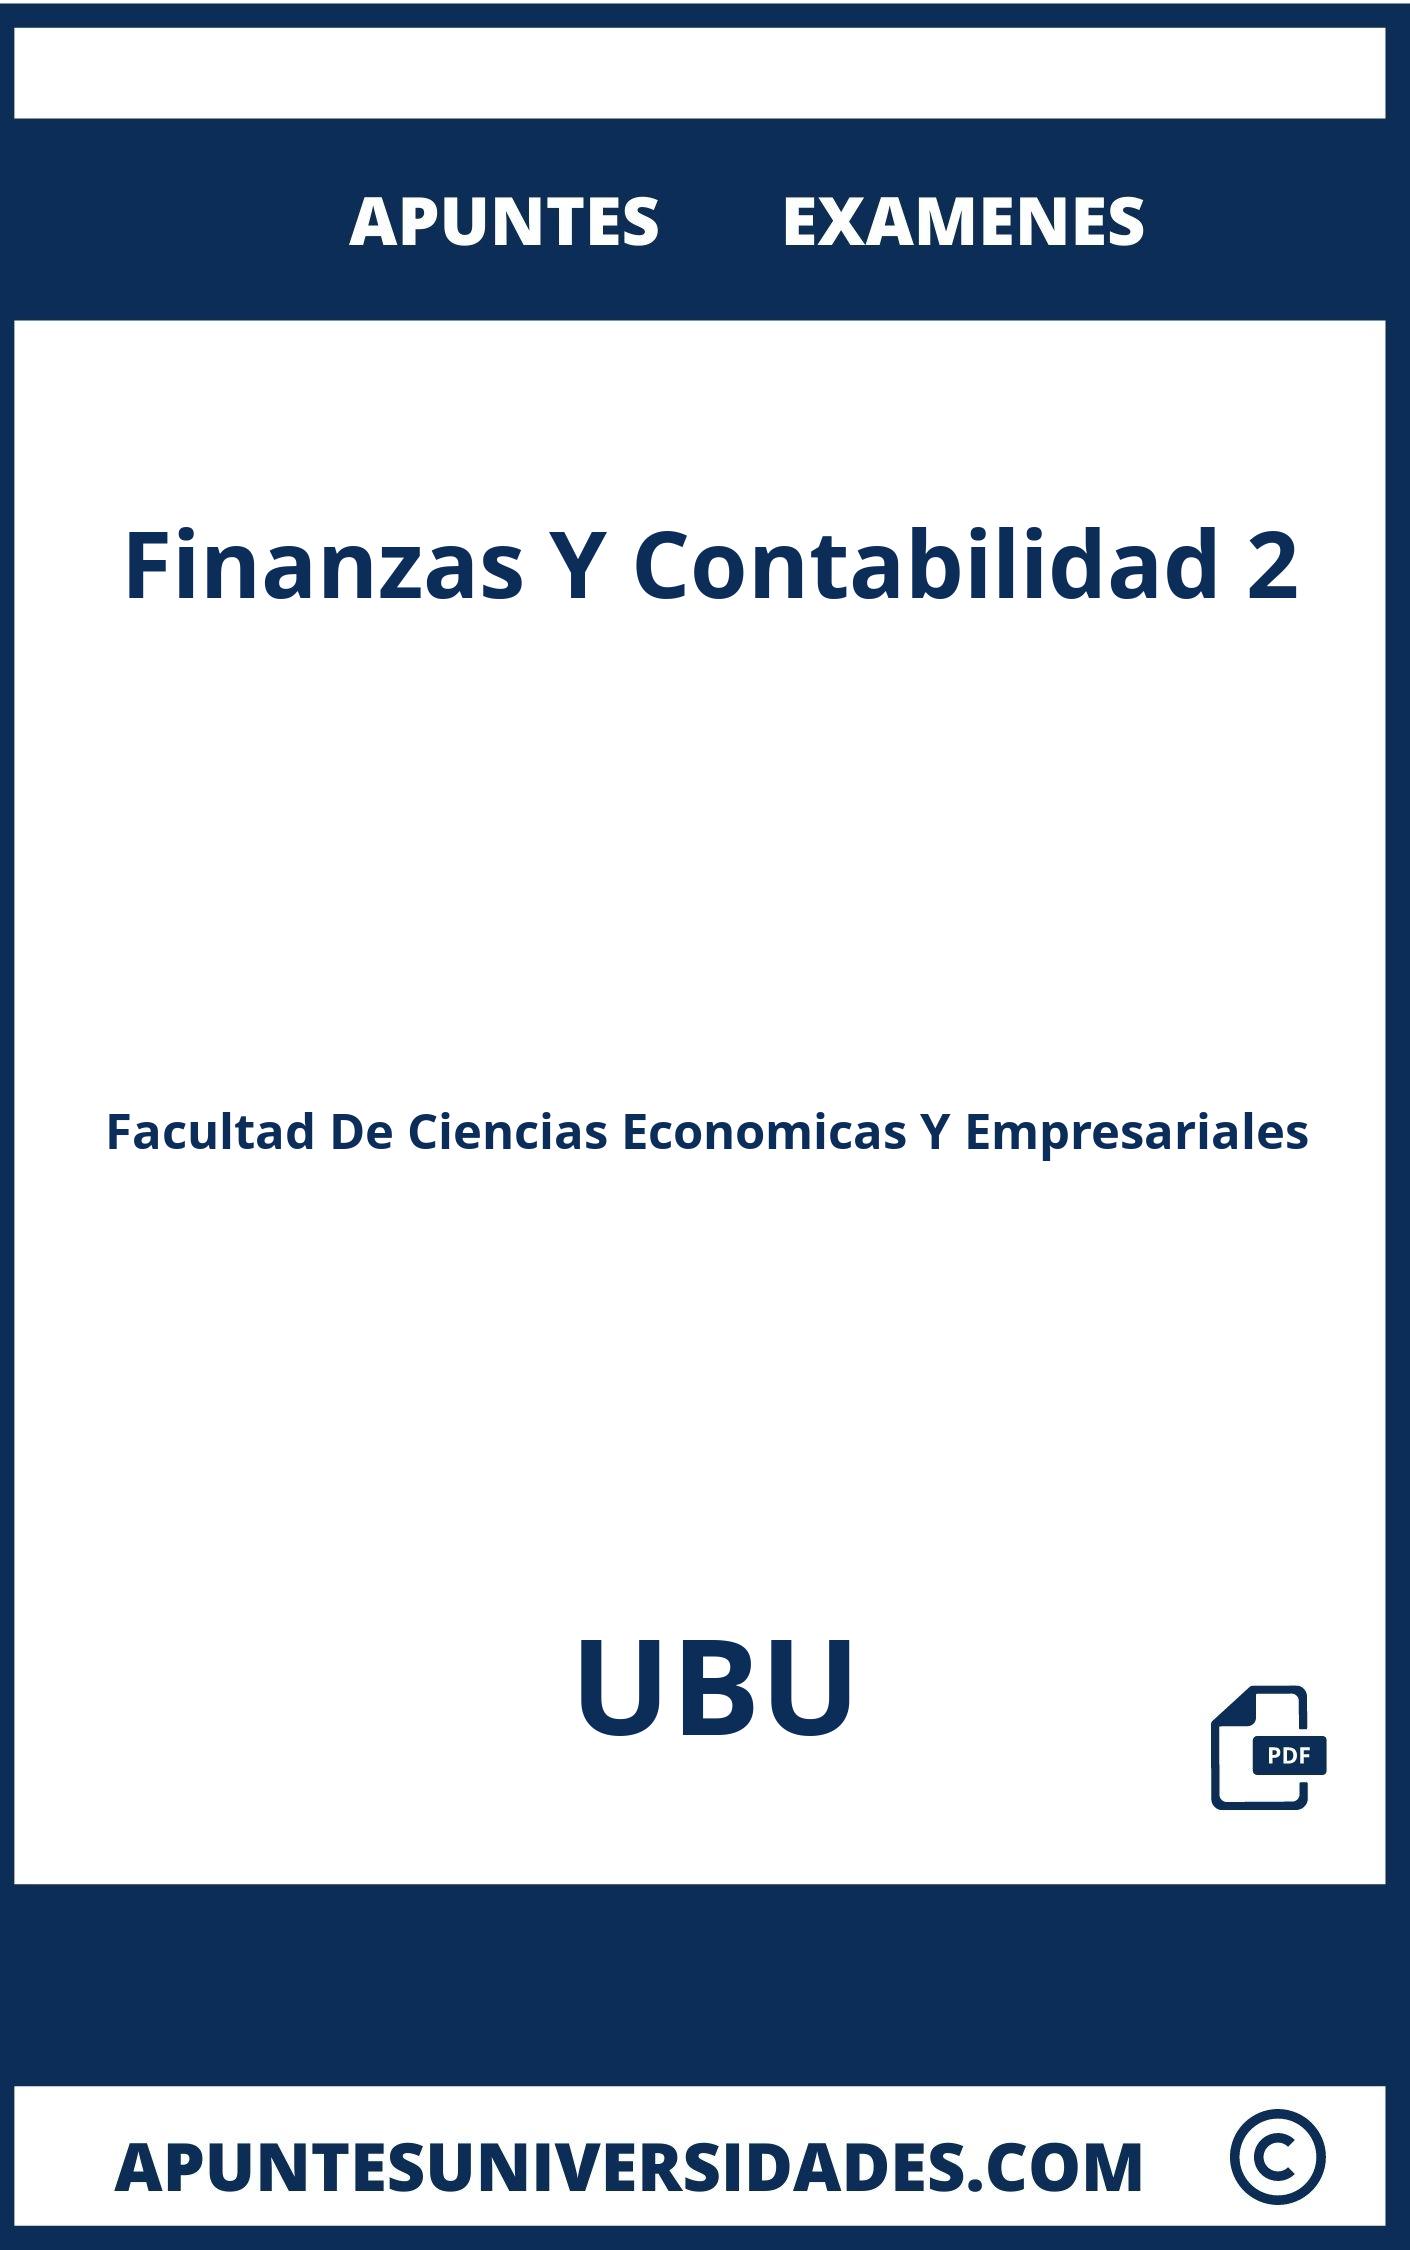 Examenes y Apuntes de Finanzas Y Contabilidad 2 UBU